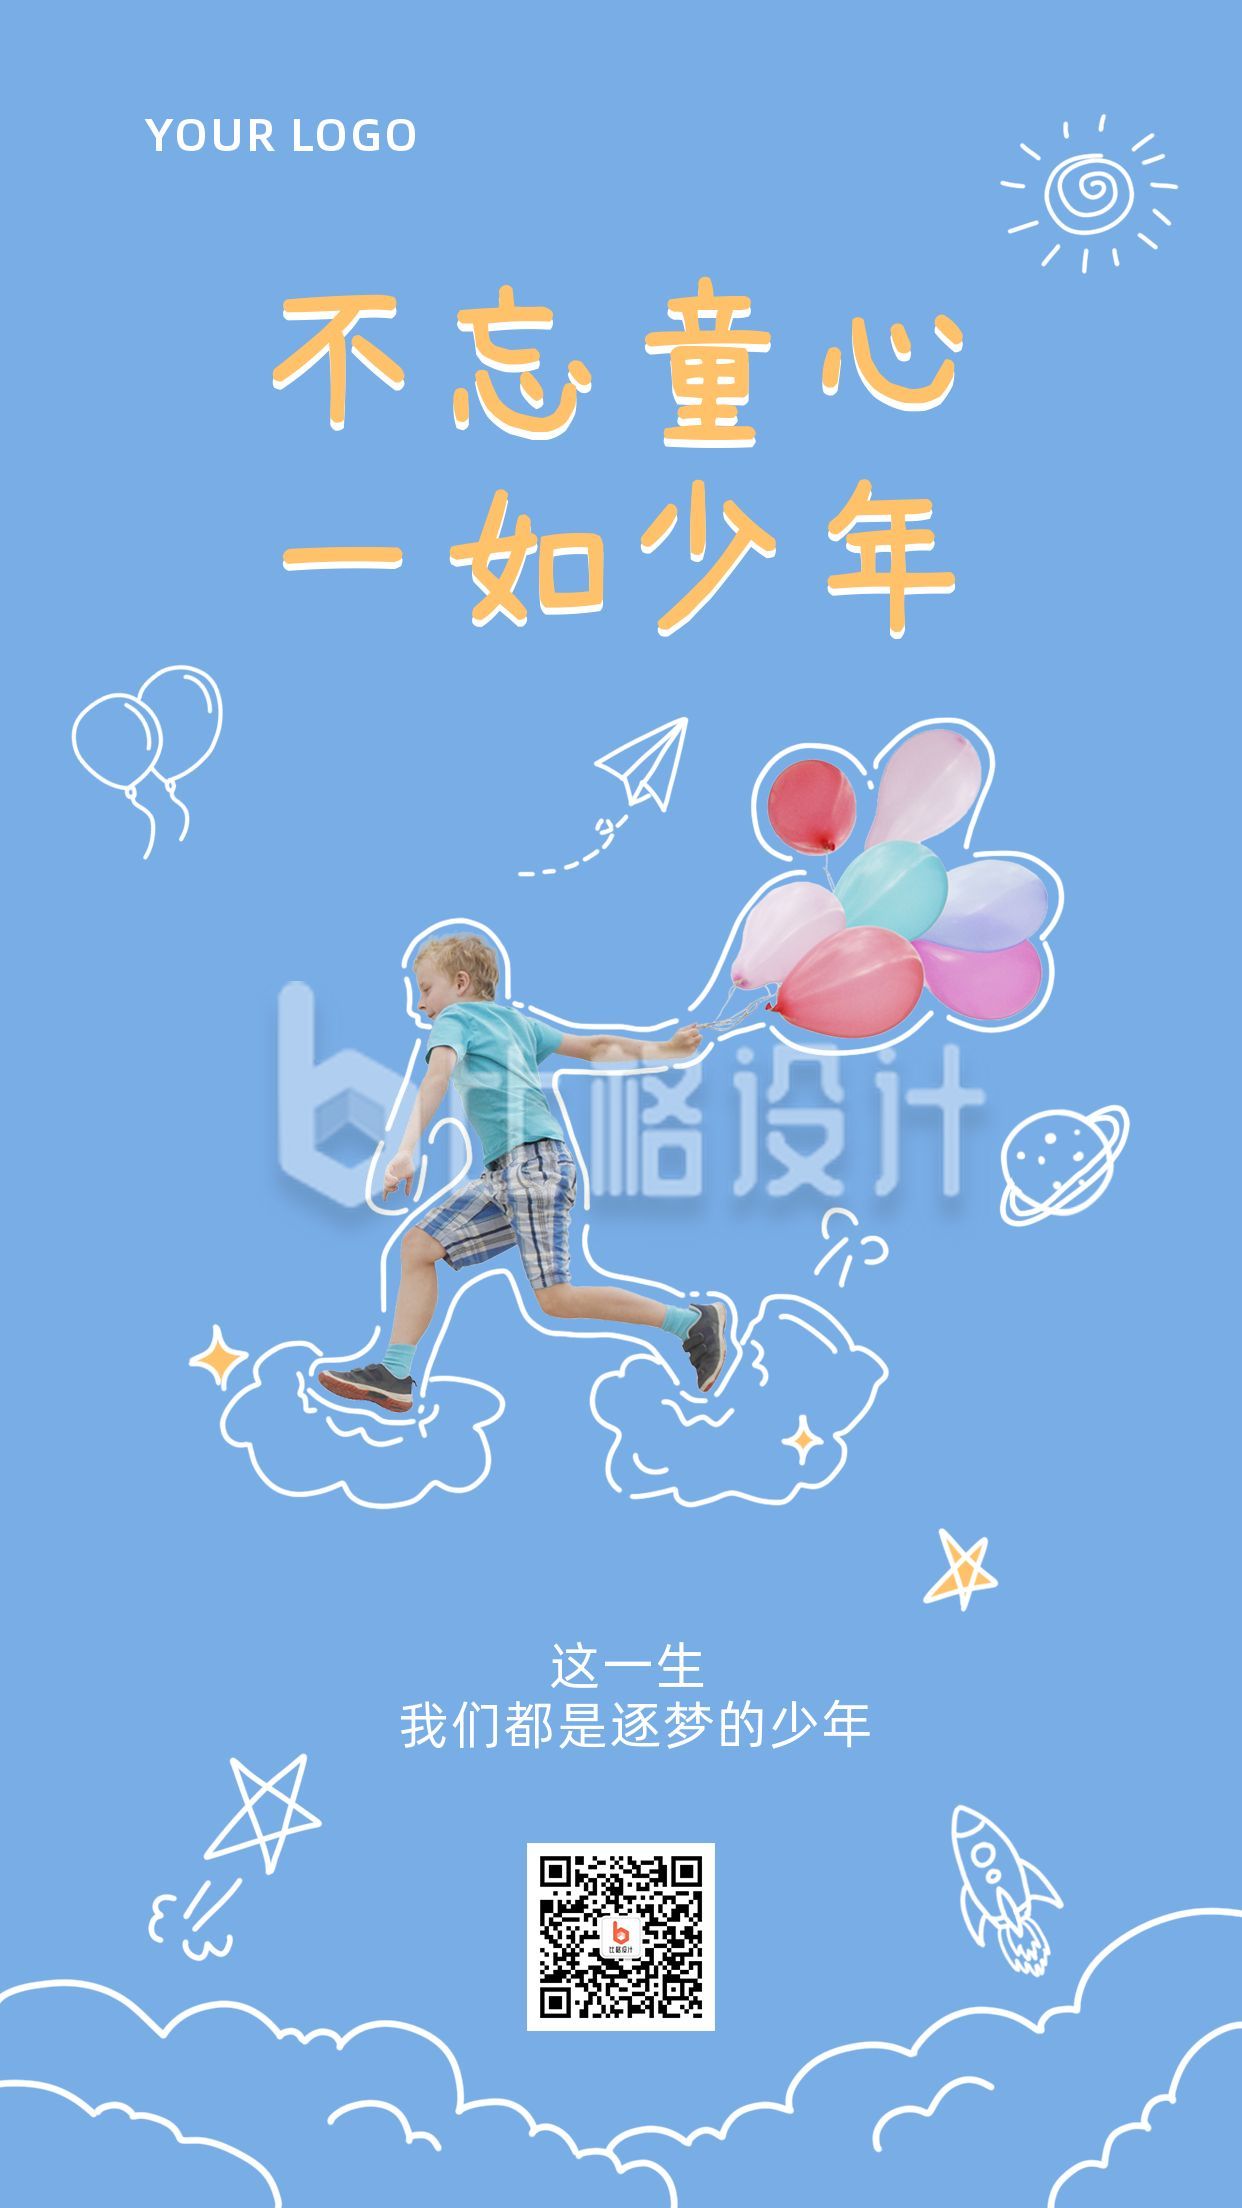 蓝色背景可爱手绘涂鸦六一儿童节快乐童心祝福手机海报